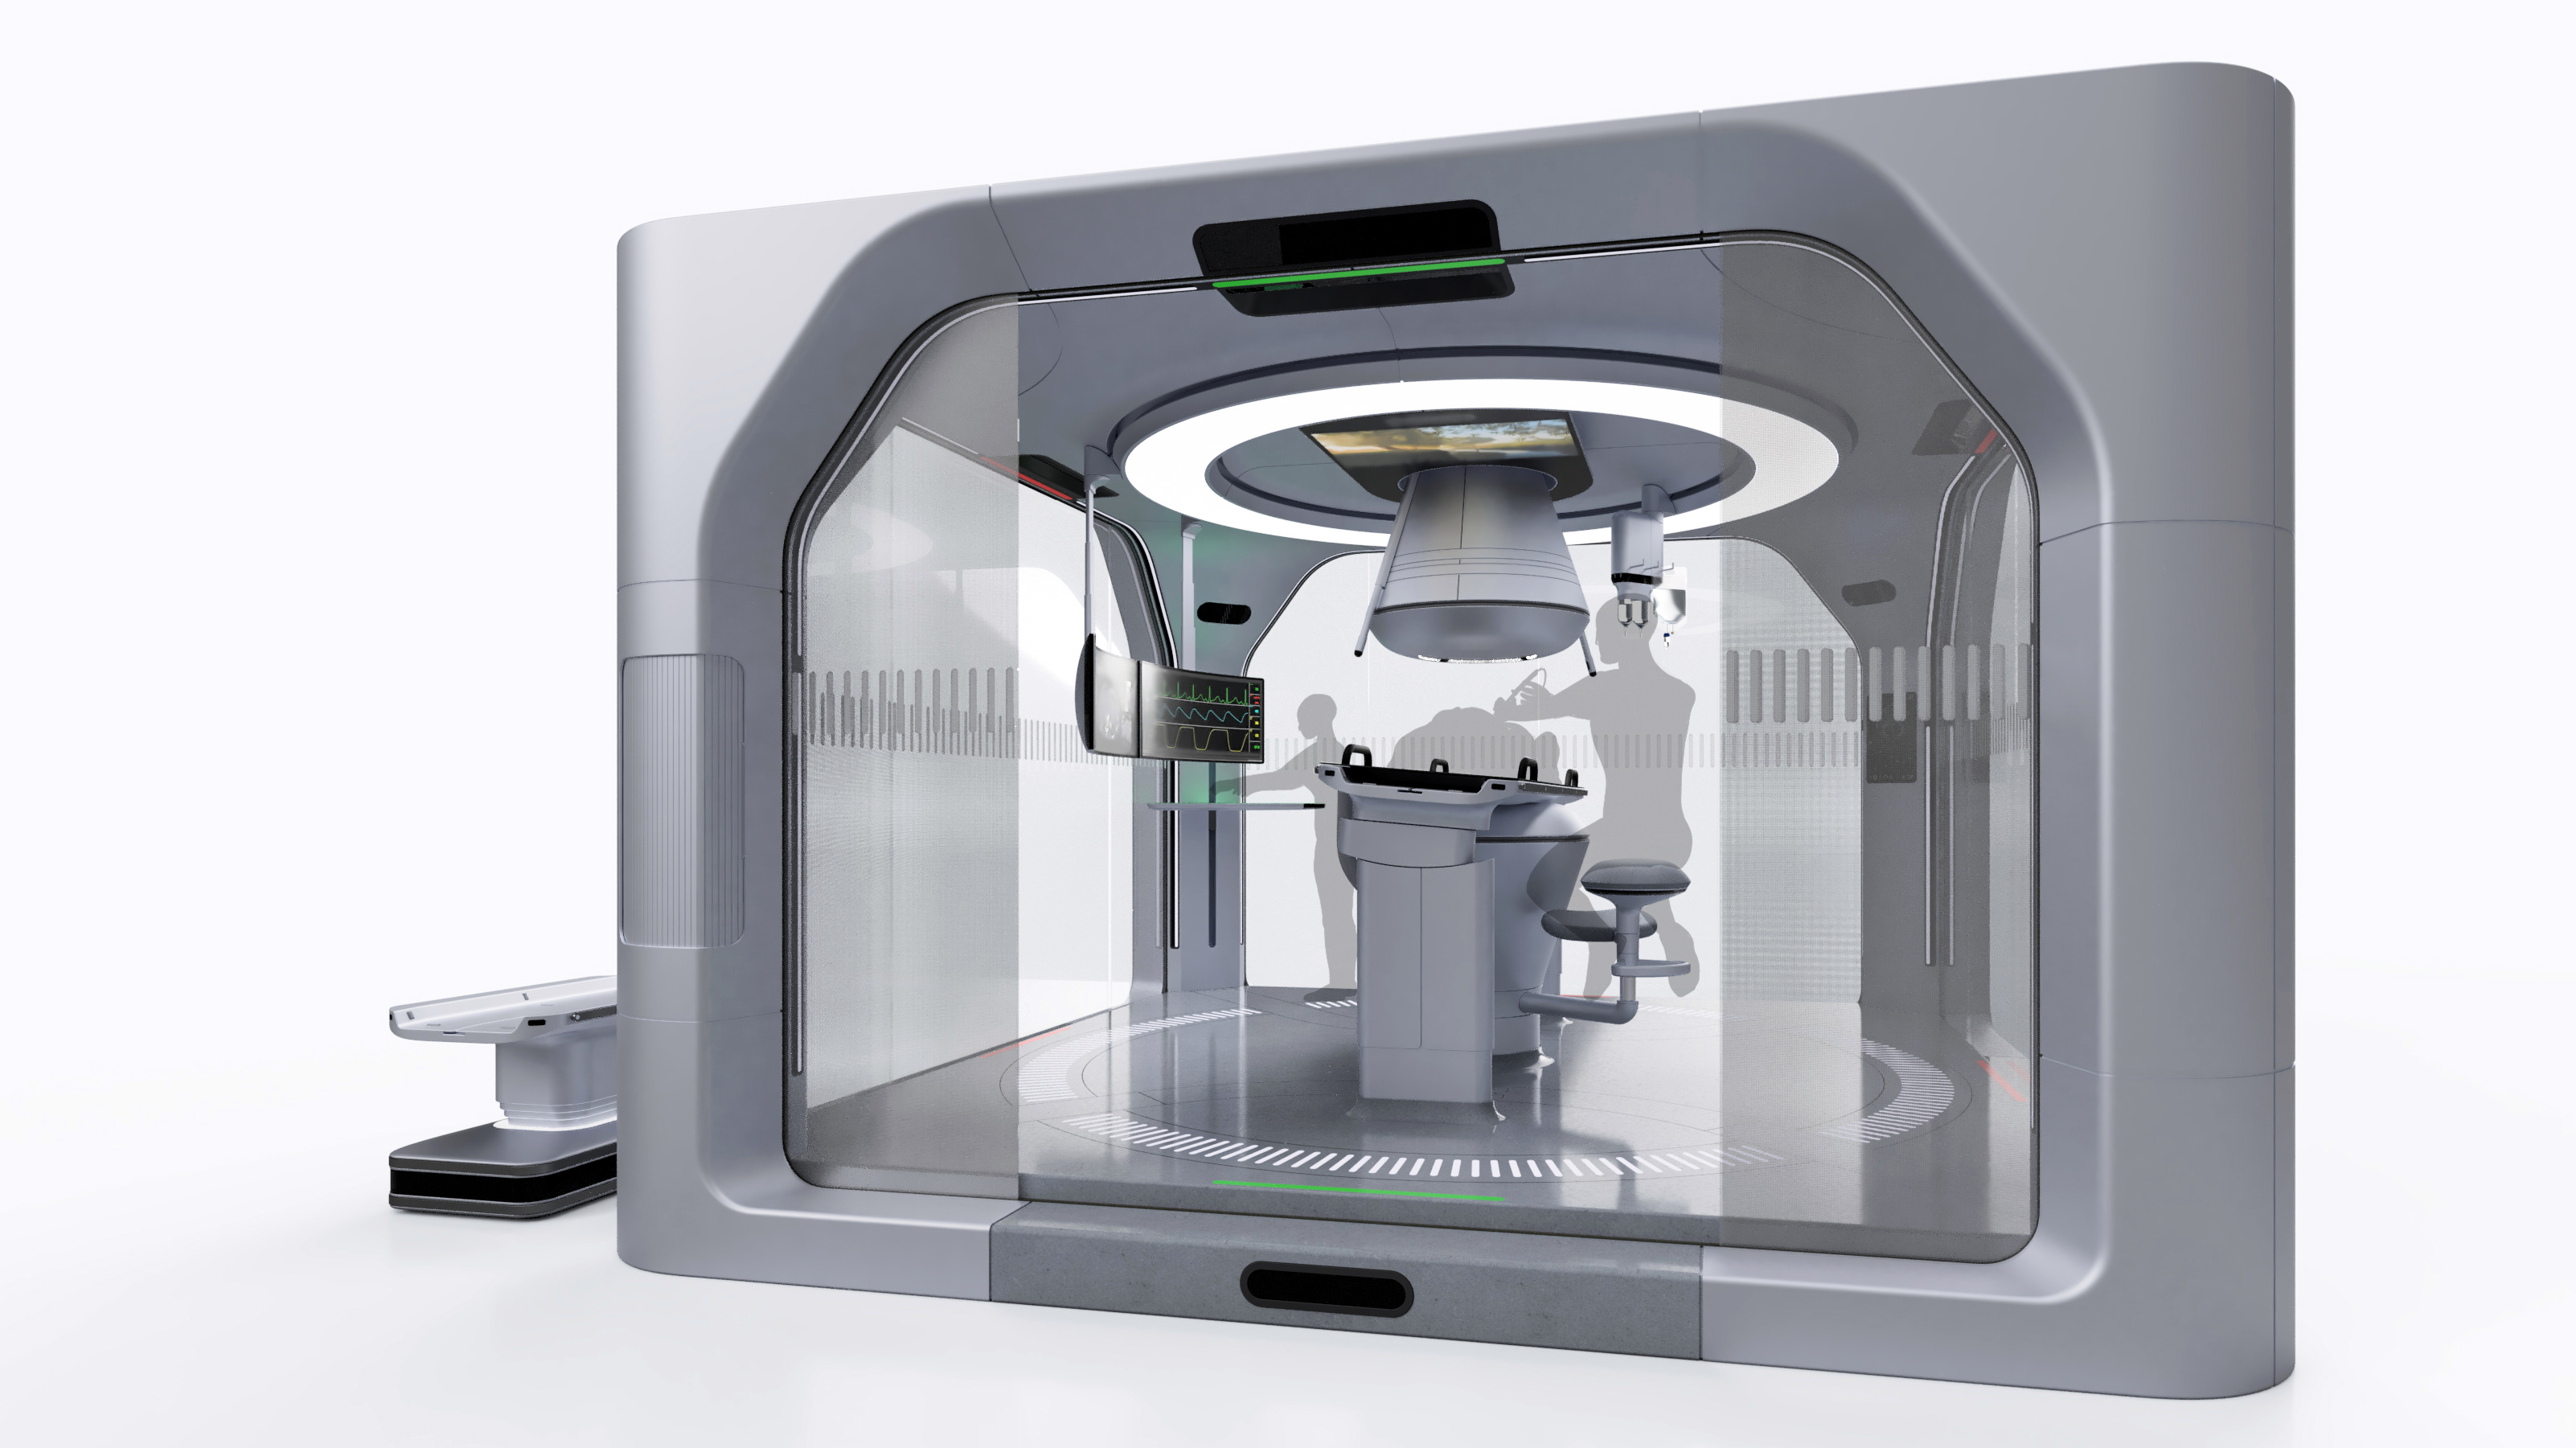 Next Gen Interventional Magnetic Resonance Scanner